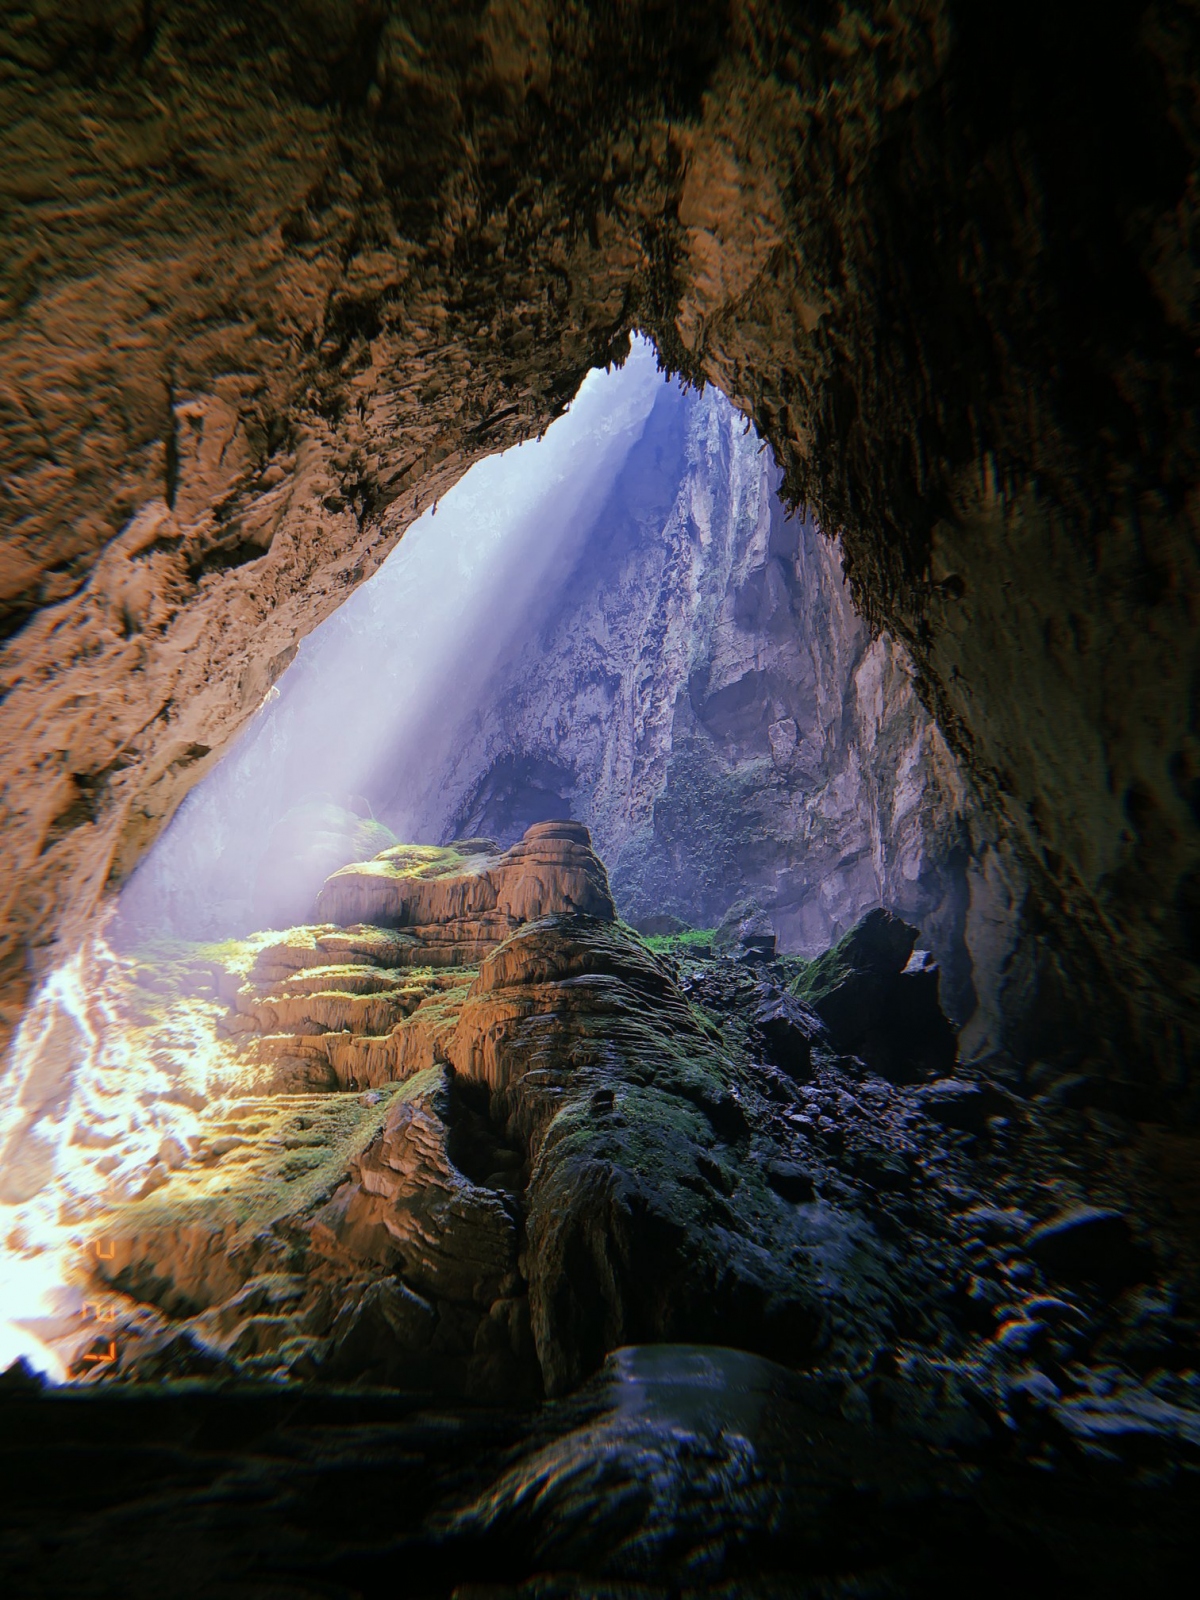 Hình ảnh Khủng Long Vong trong hang Sơn Đoòng tuyệt đẹp